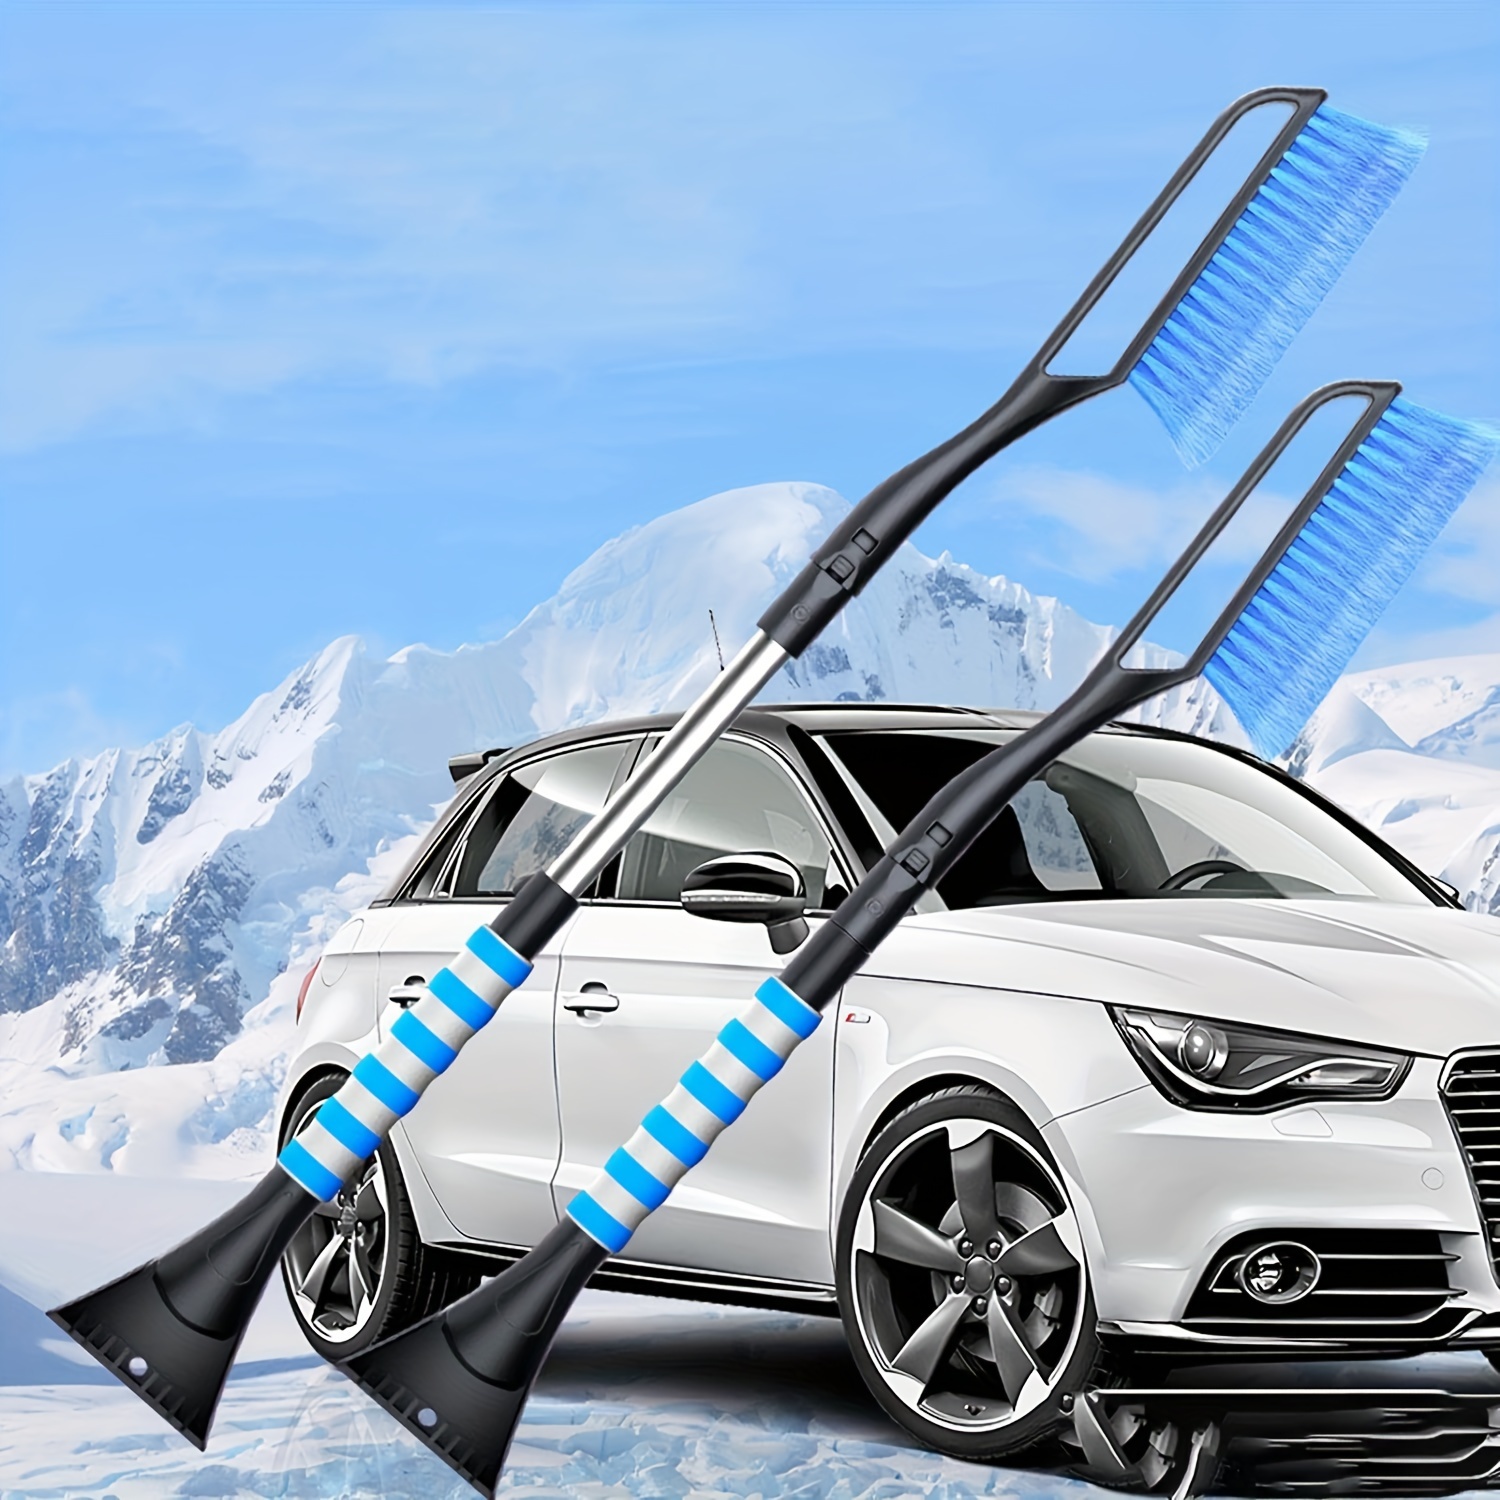 Chaies Auto Schaber Schneebürste – Multifunktionale Schneebürste